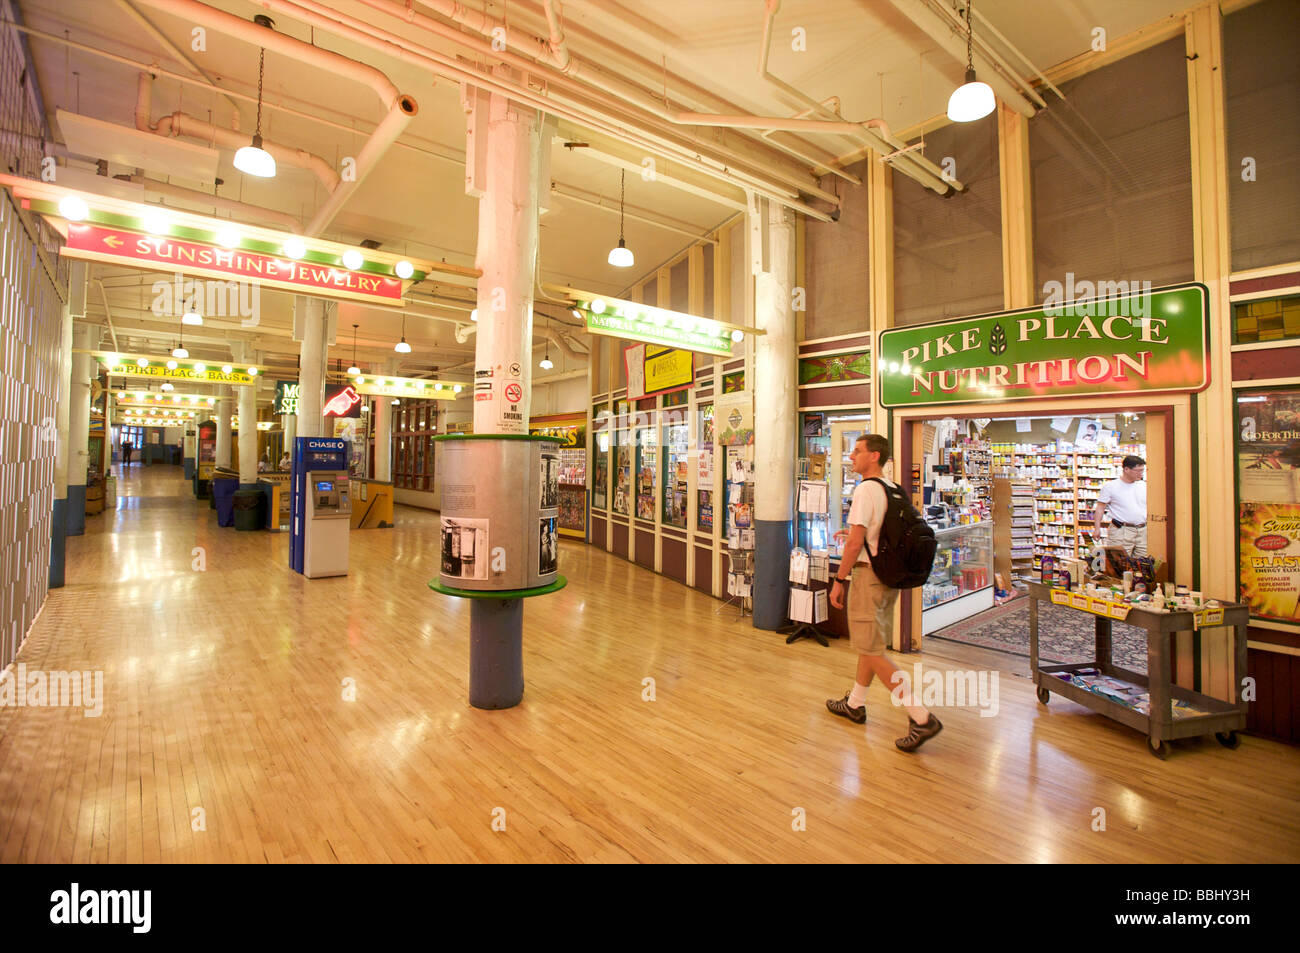 Livello inferiore negozi nel Mercato di Pike Place, Seattle, WA, Stati Uniti d'America Foto Stock